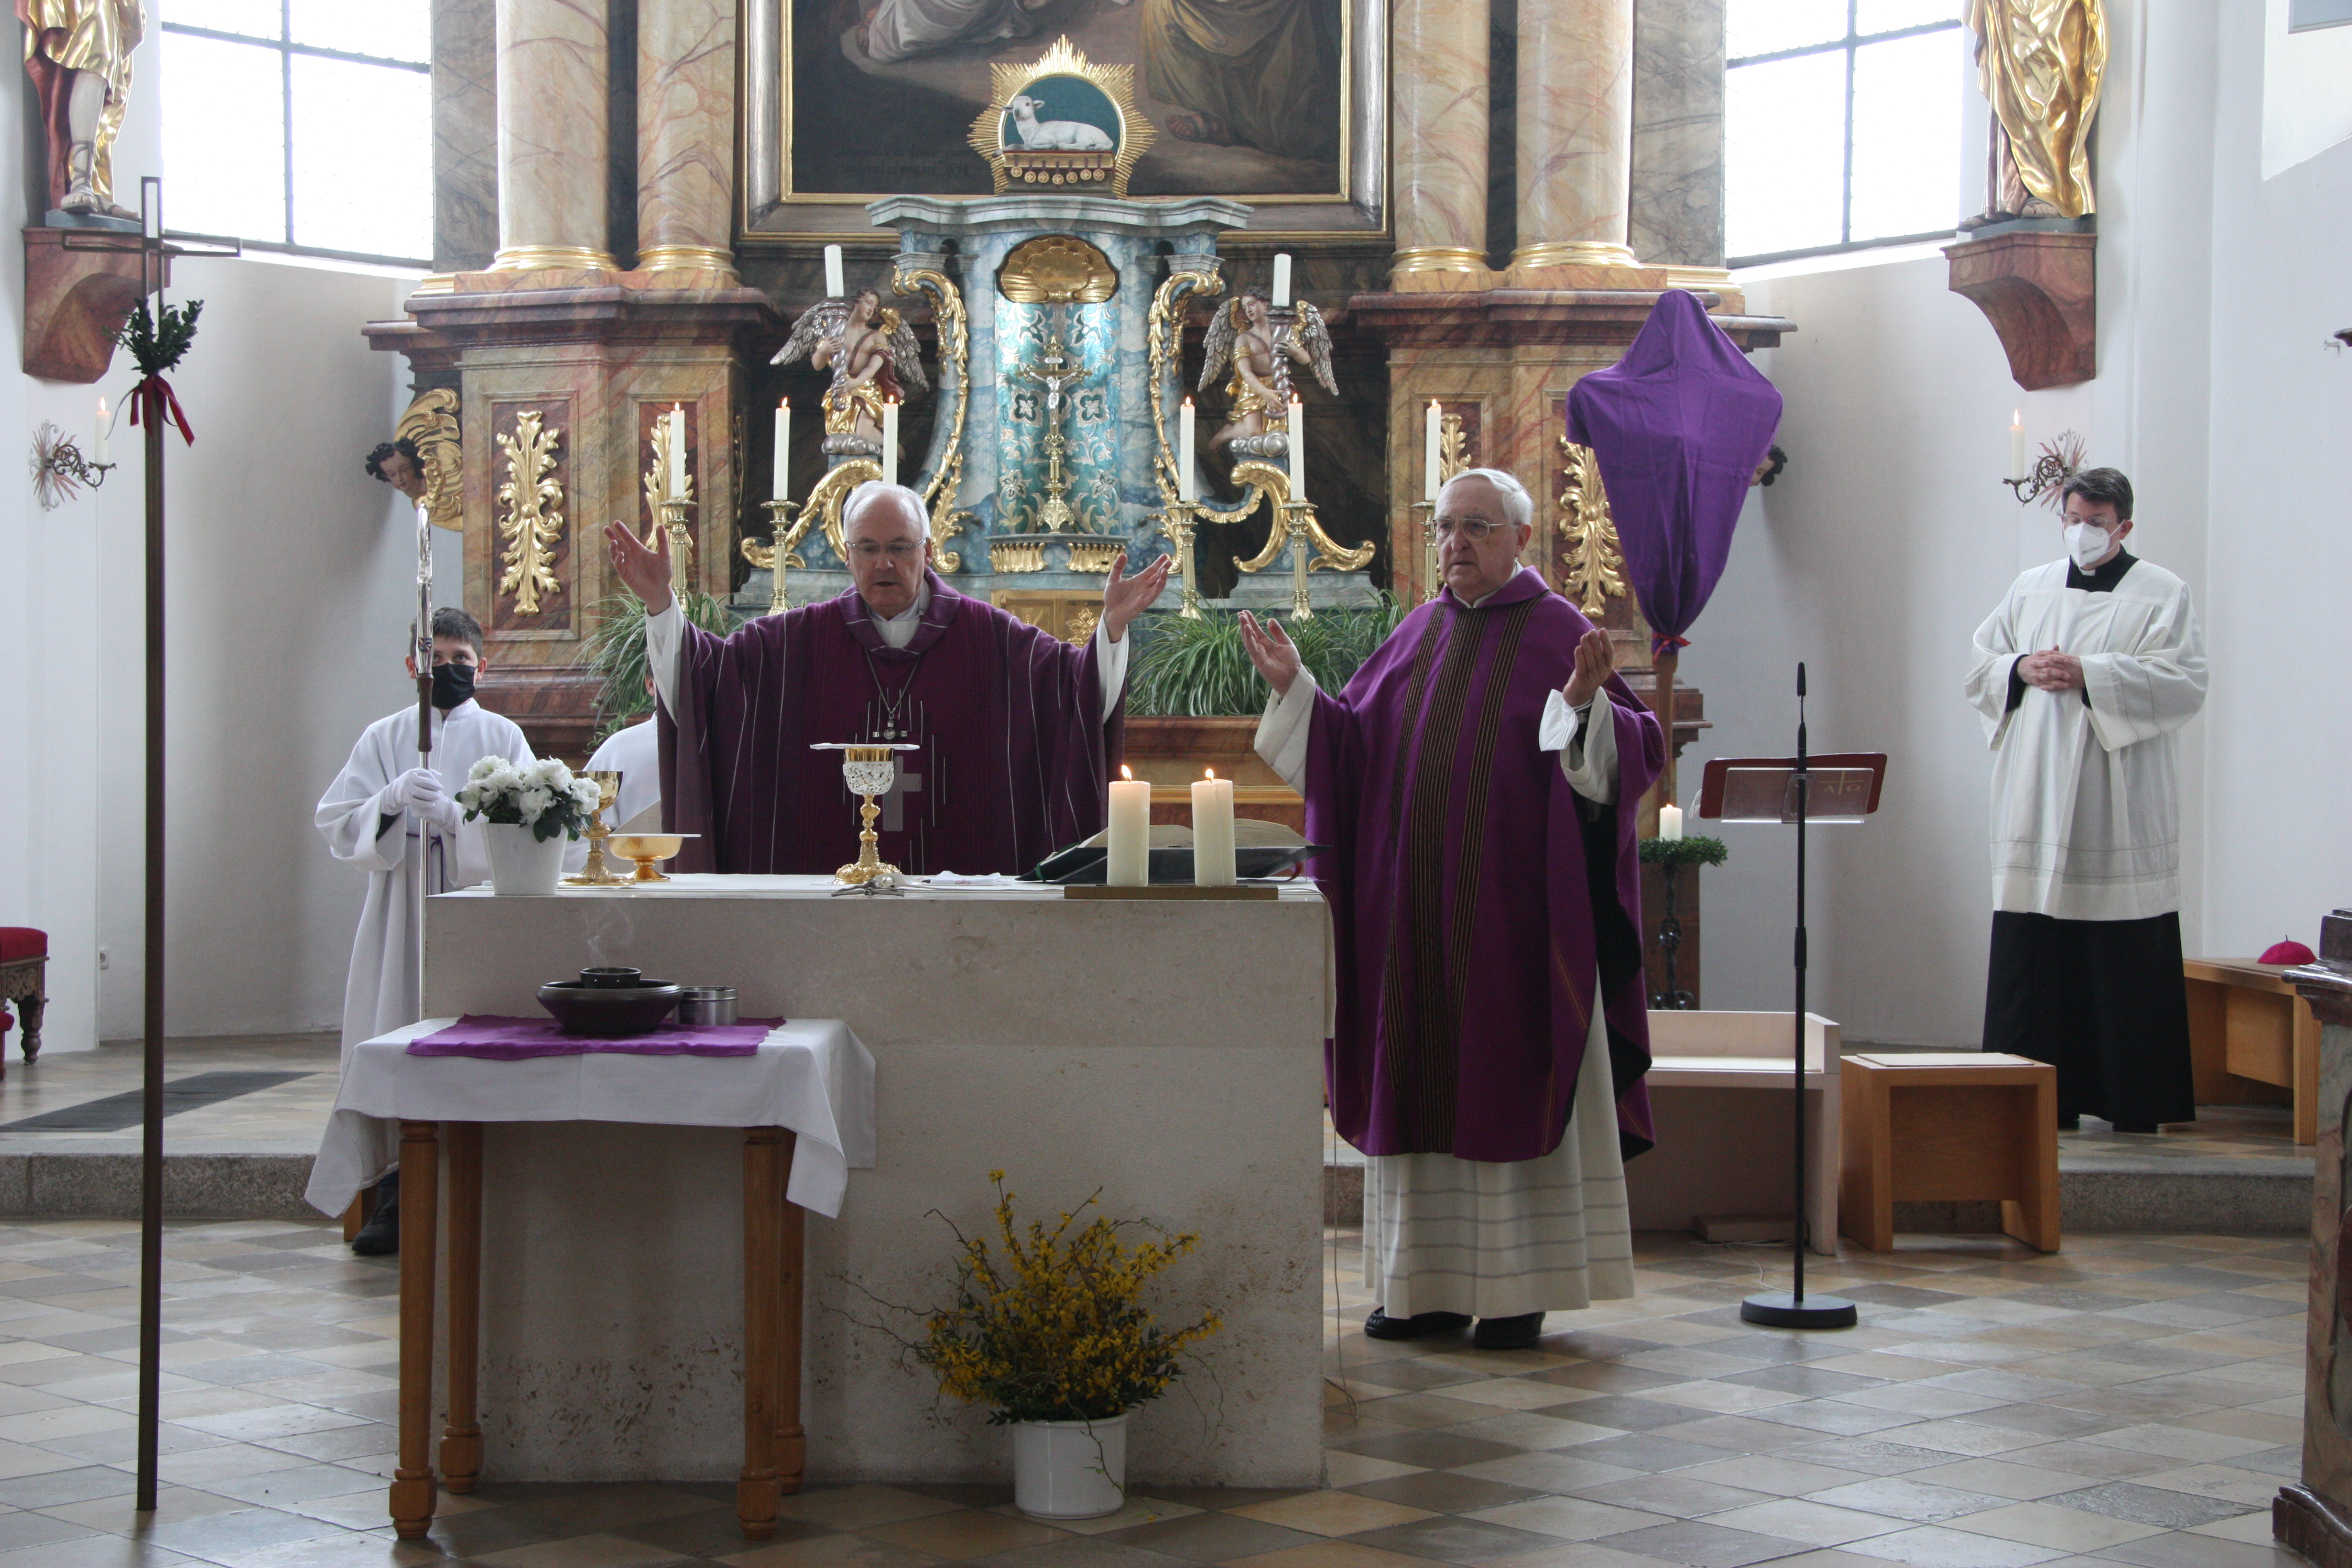 Am Altar Bischof Rudolf, Pfarrer Schober, Dr. Ackermann (im Hintergrund)